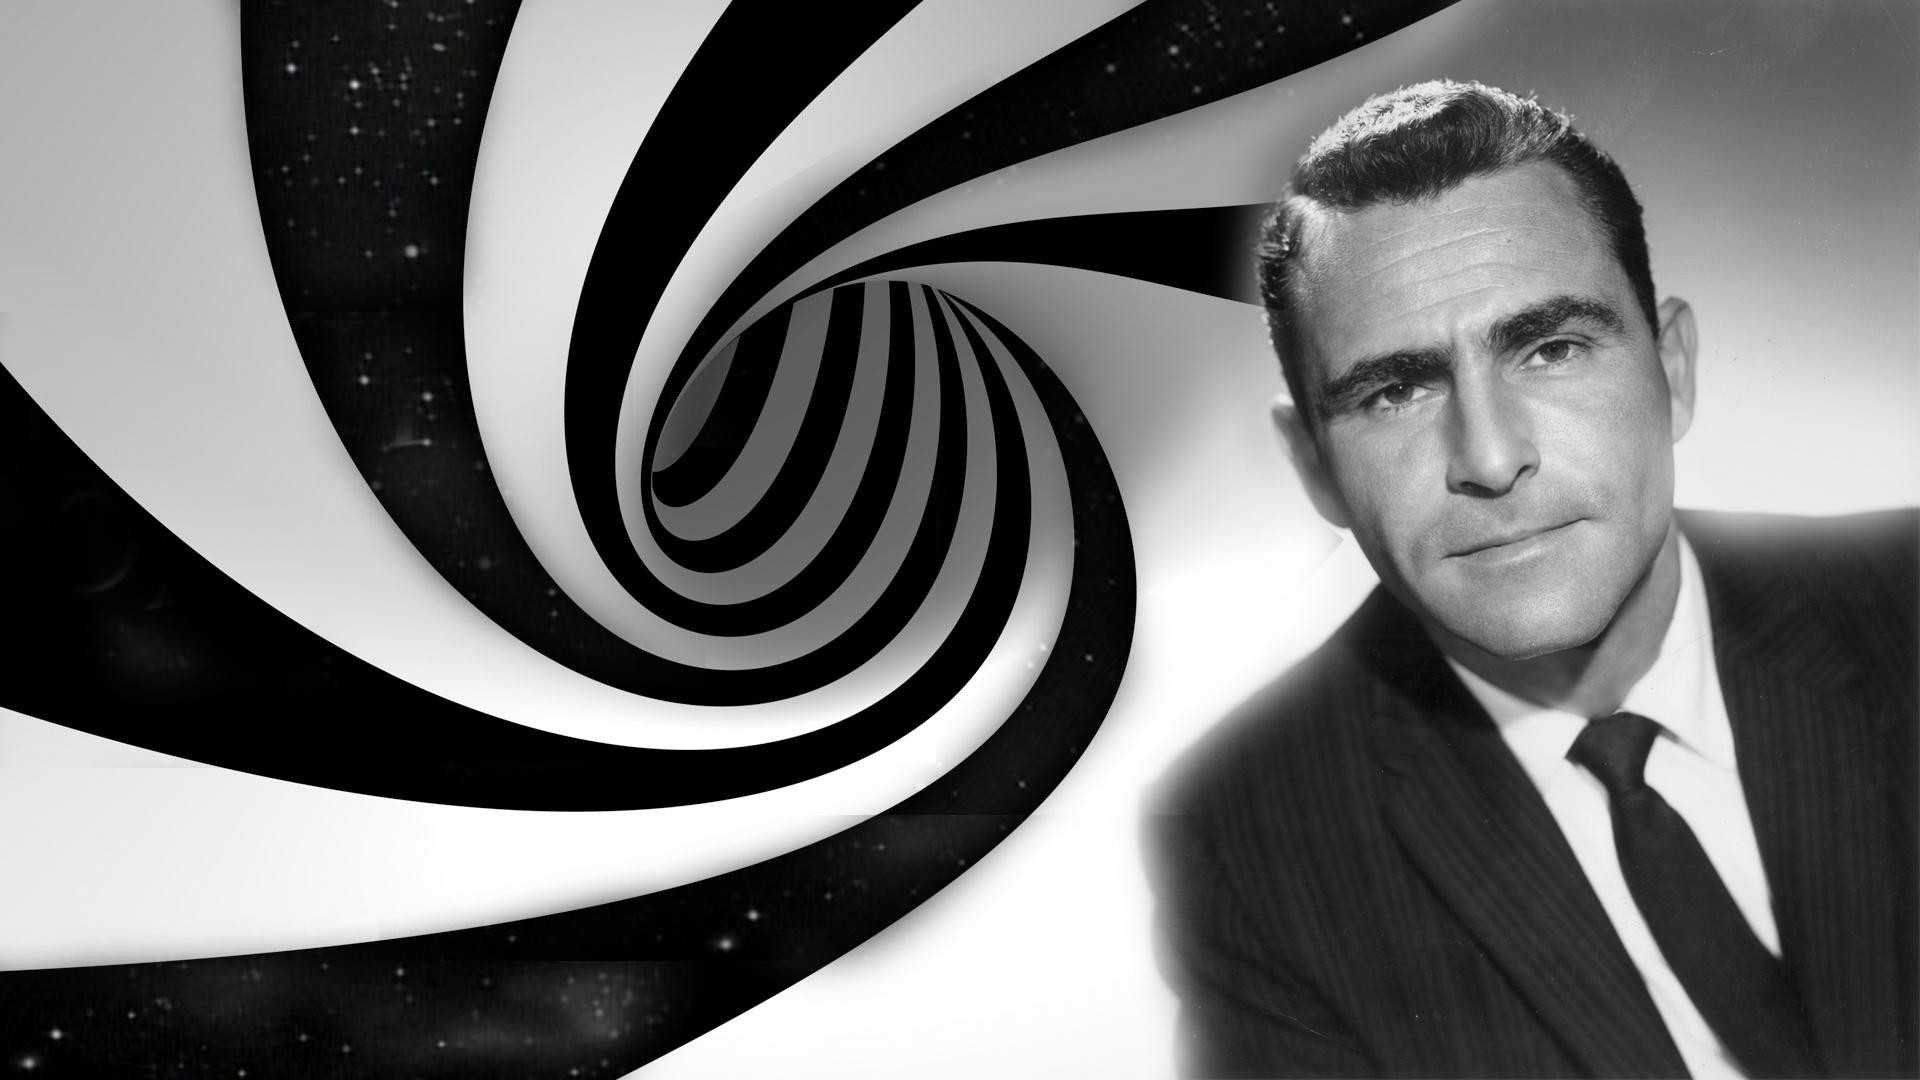 1920x1080 The Twilight Zone image